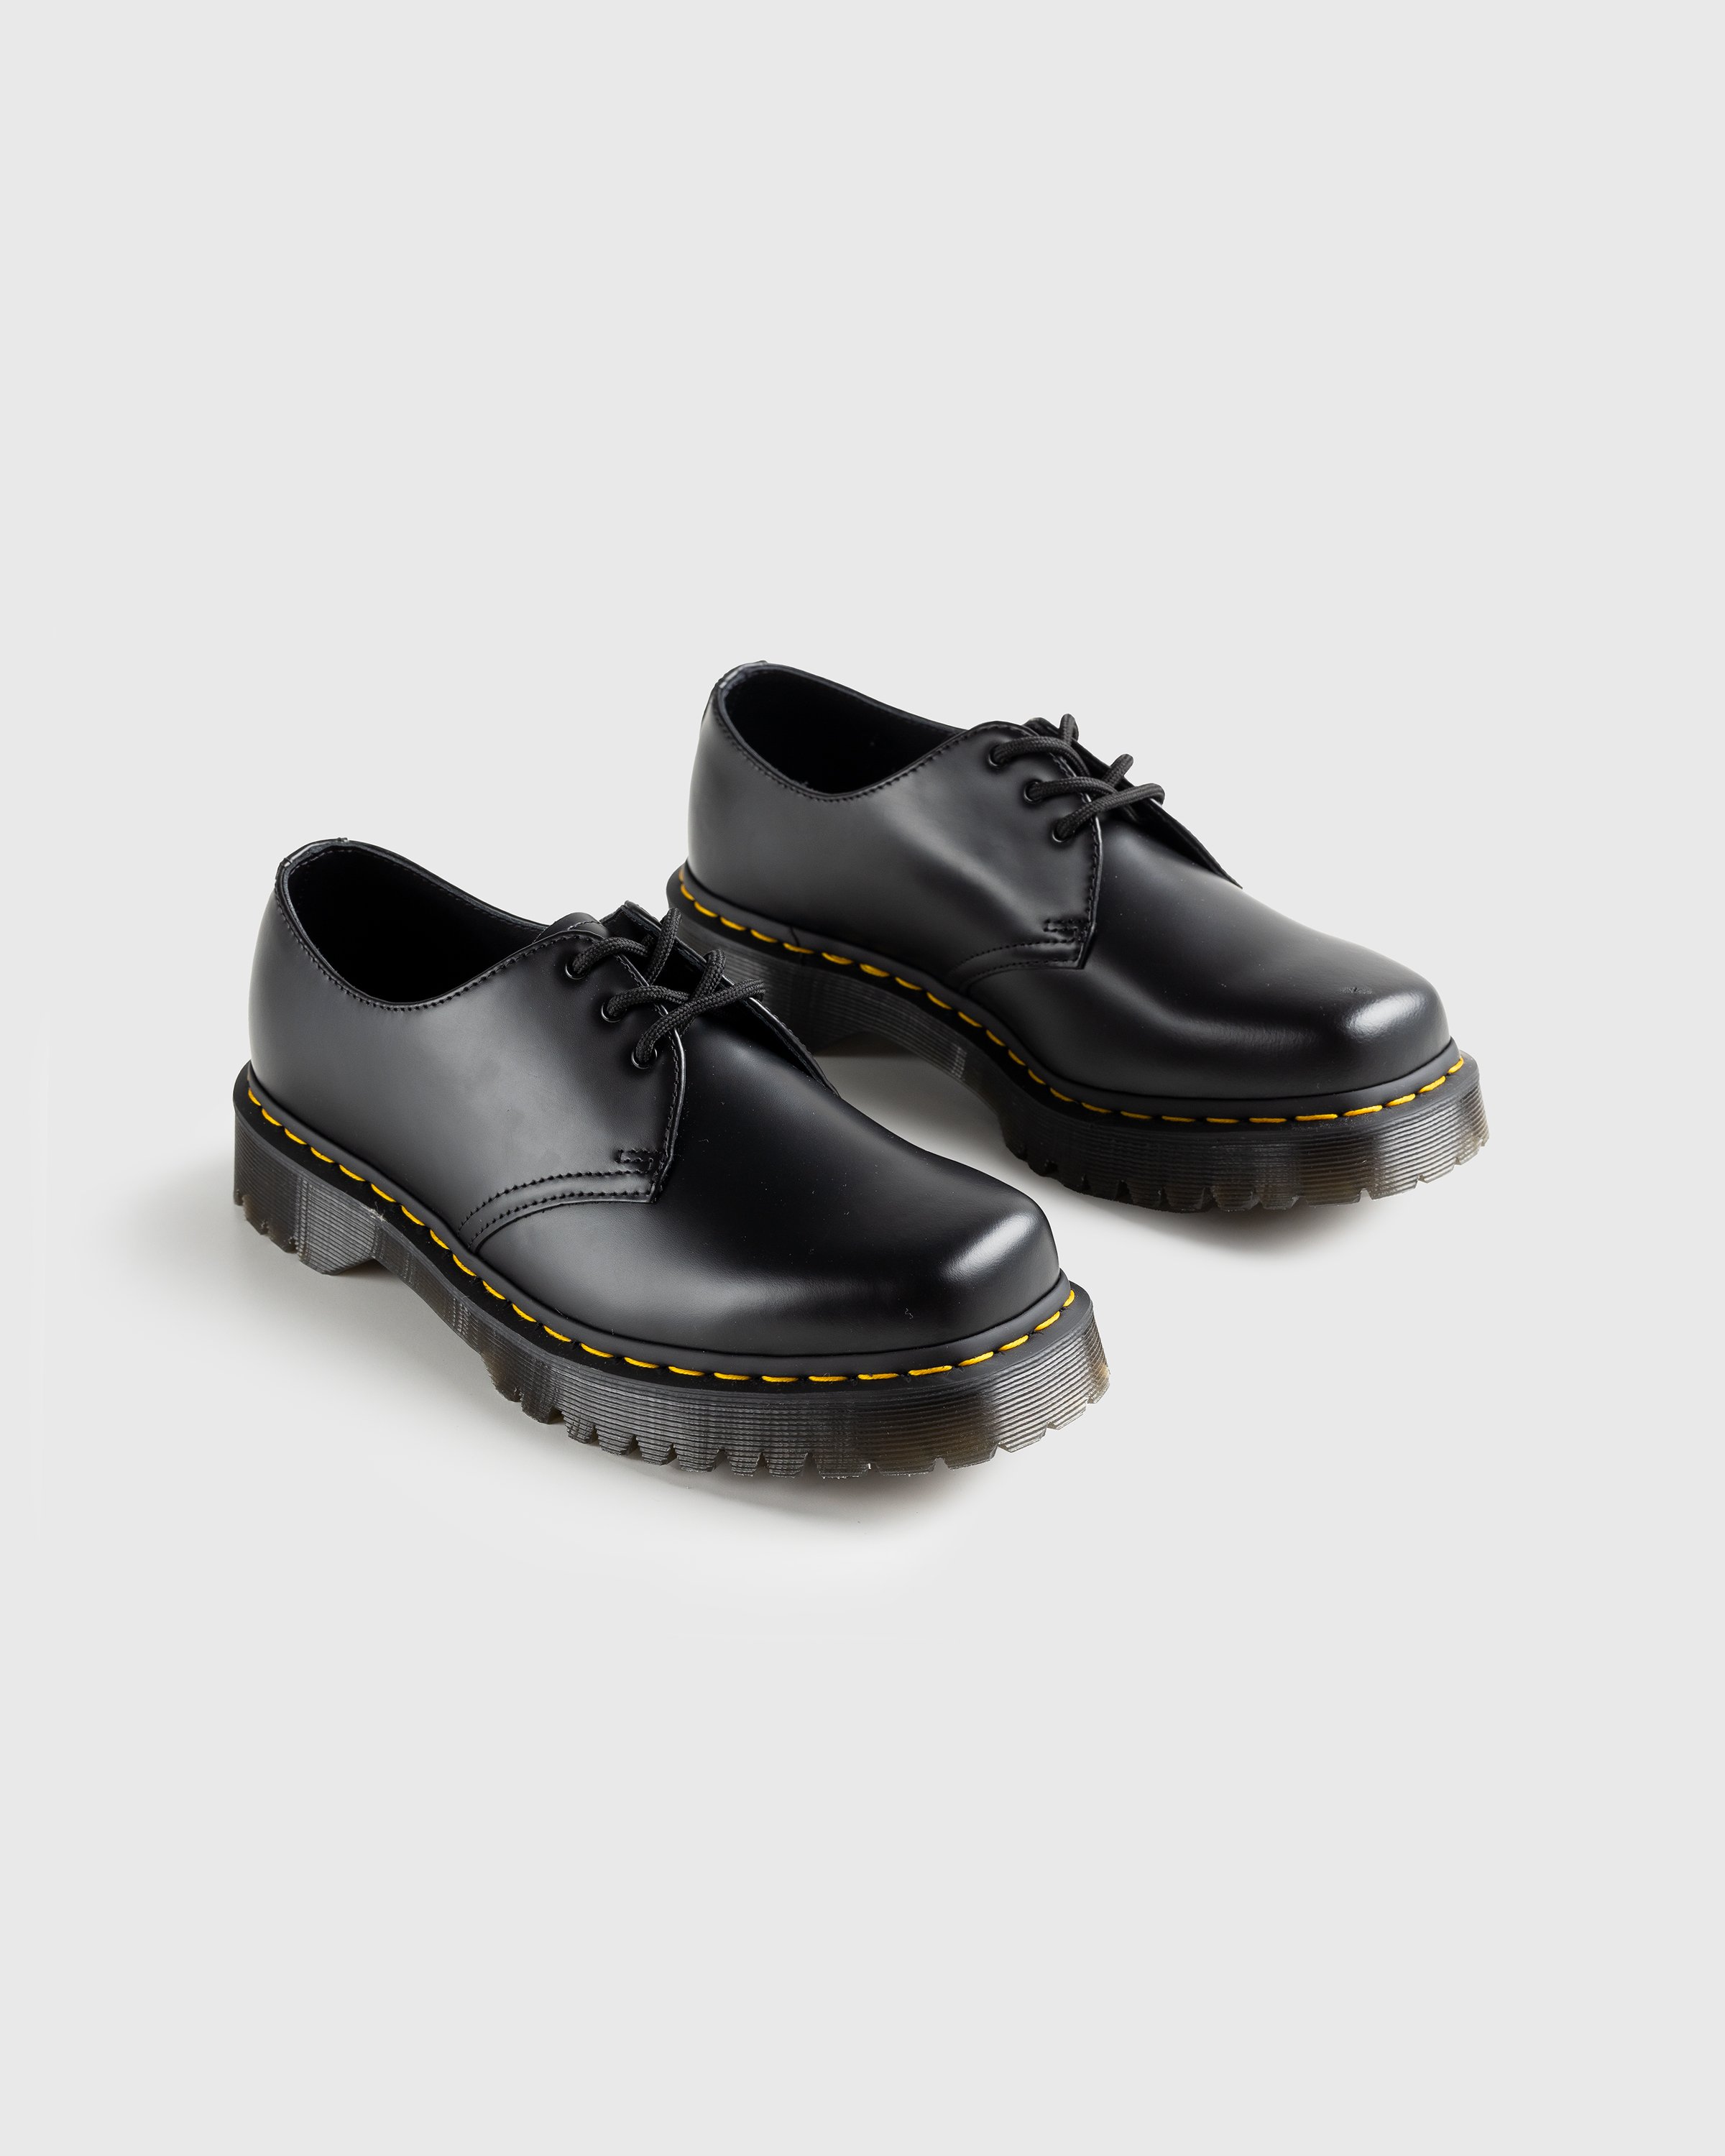 Dr. Martens - 1461 Bex Squared Black Polished Smooth - Footwear - Black - Image 3